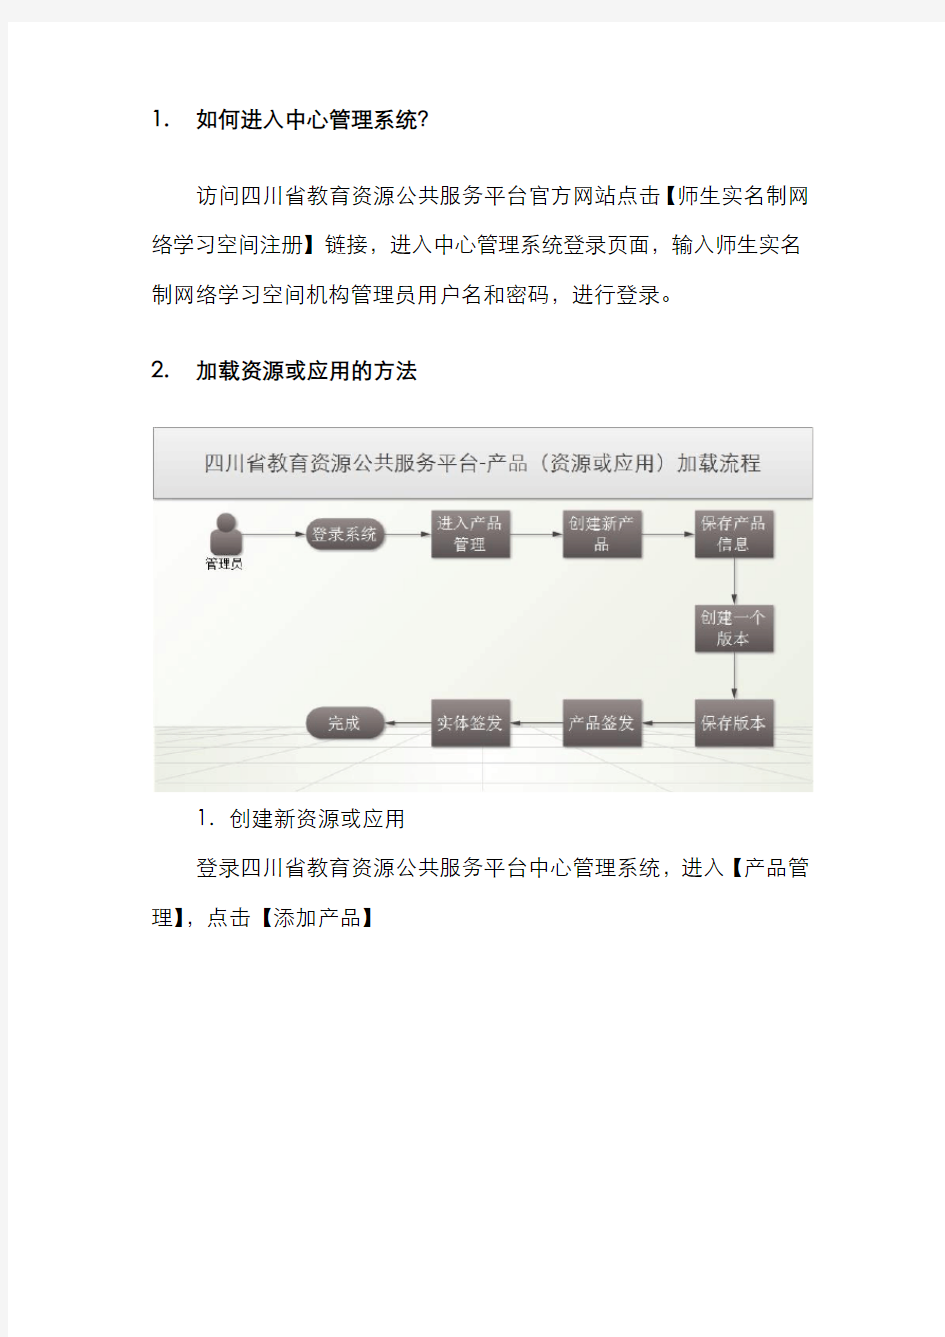 四川省教育资源公共服务平台-学校管理员操作手册(试行版)